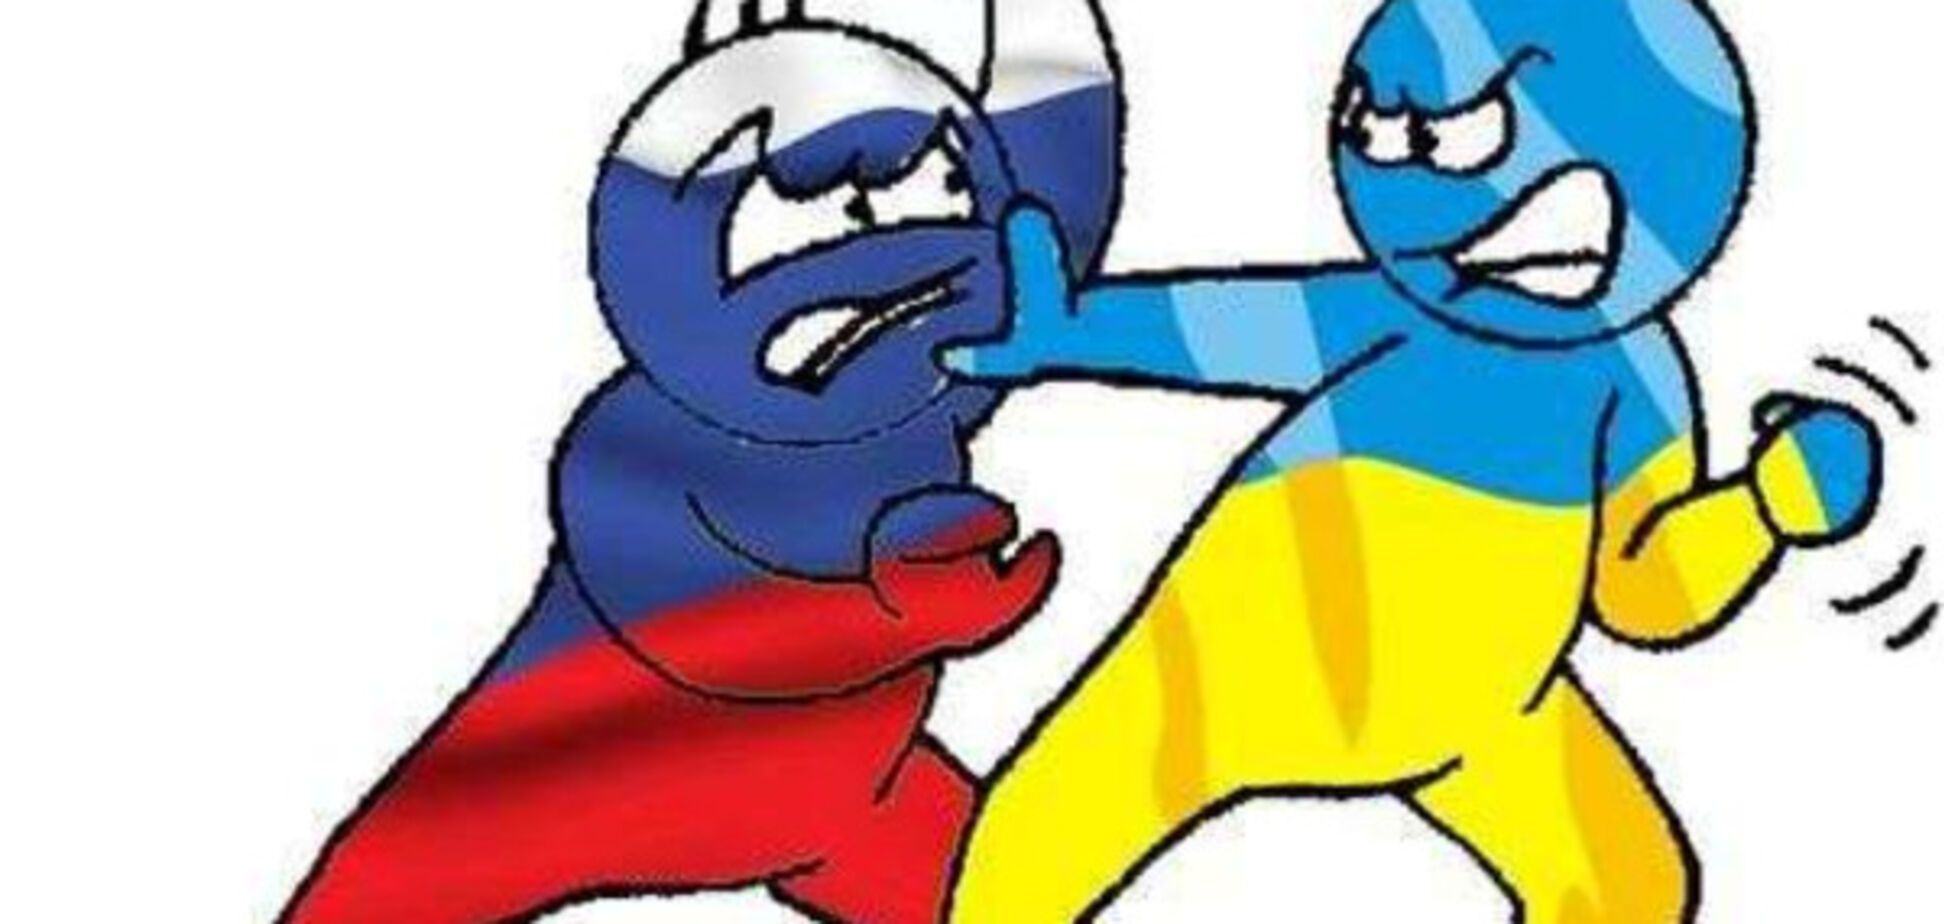 Україна проти Росії